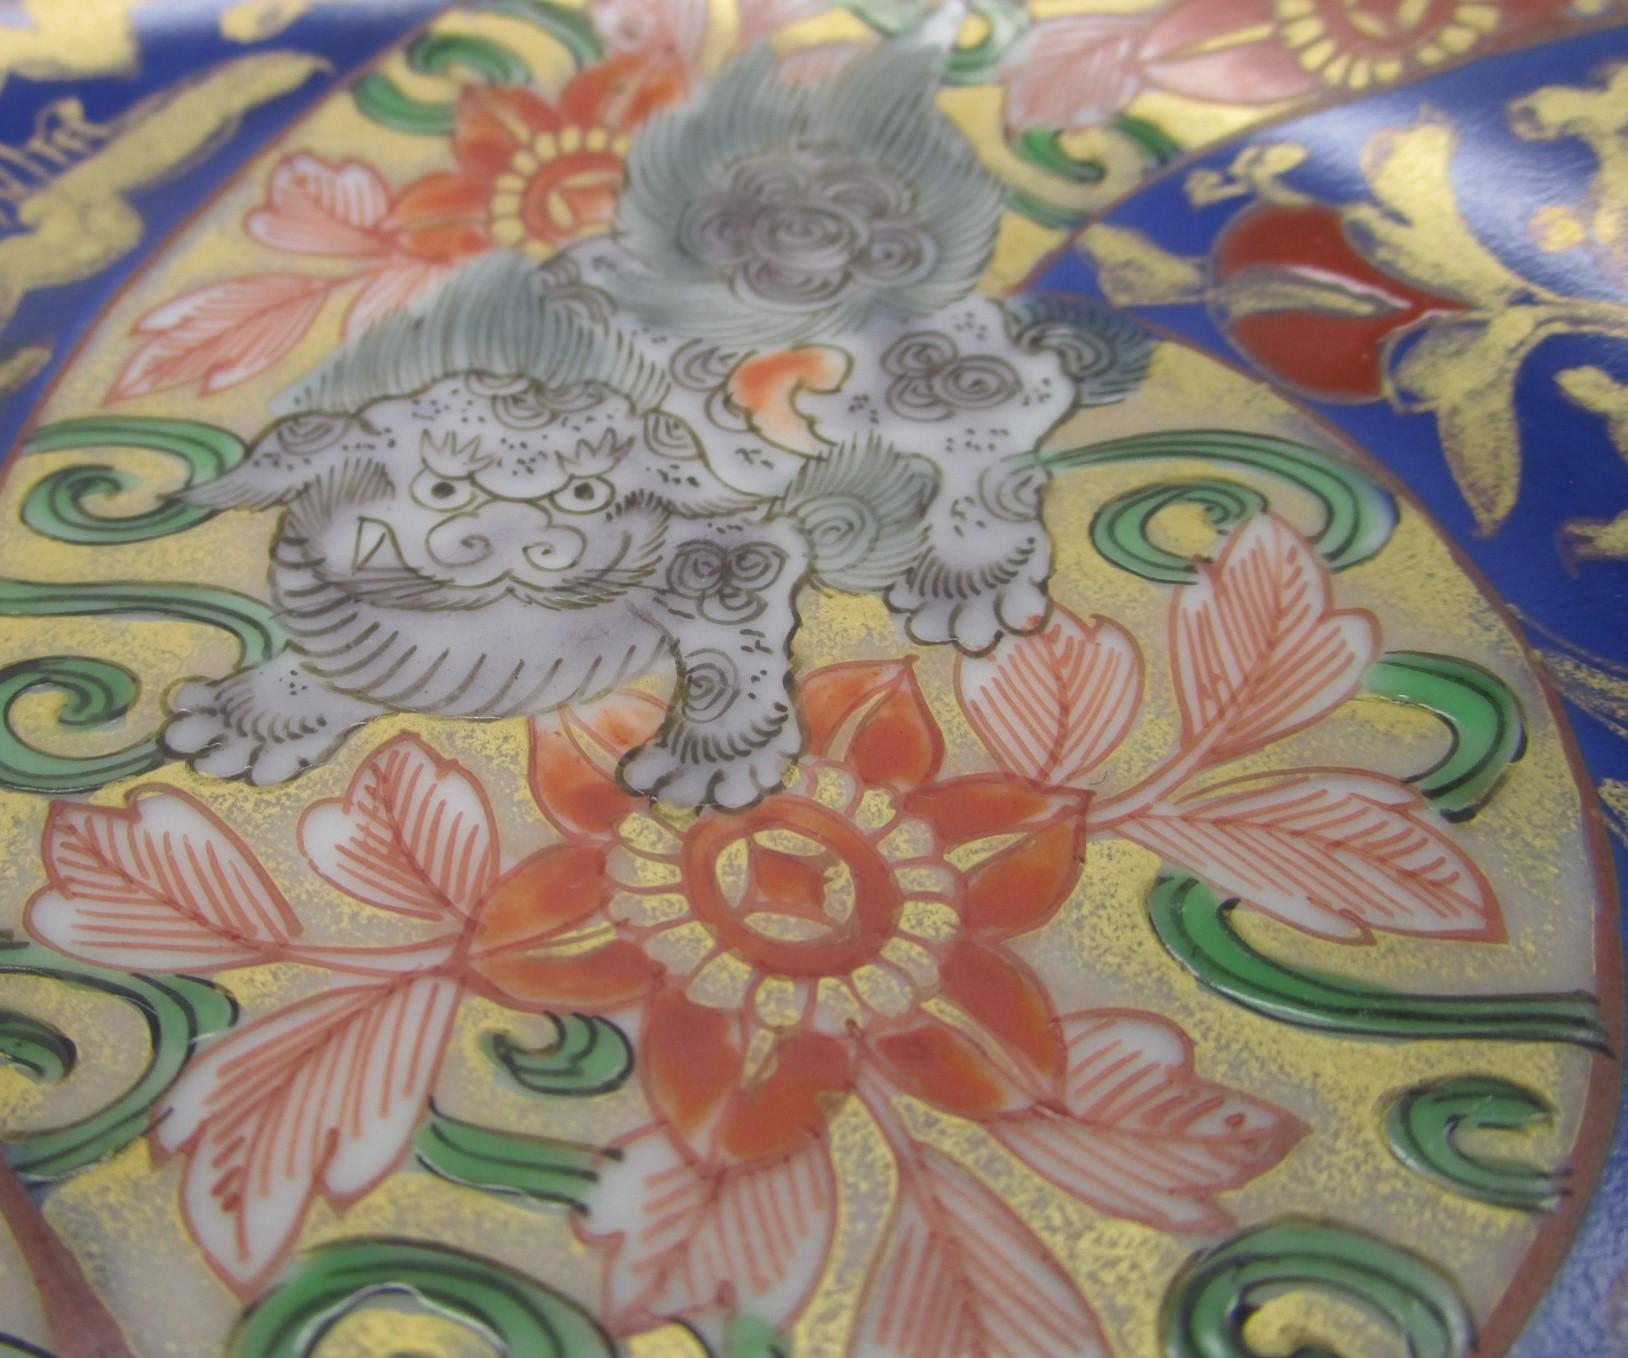 Exquis chargeur japonais de la fin du XIXe siècle, période Imari Meiji (vers 1880), signé en porcelaine rouge fer, bleu cobalt et vert. Il présente trois panneaux à motifs floraux sur un fond doré spectaculaire avec des lions shishi qui se